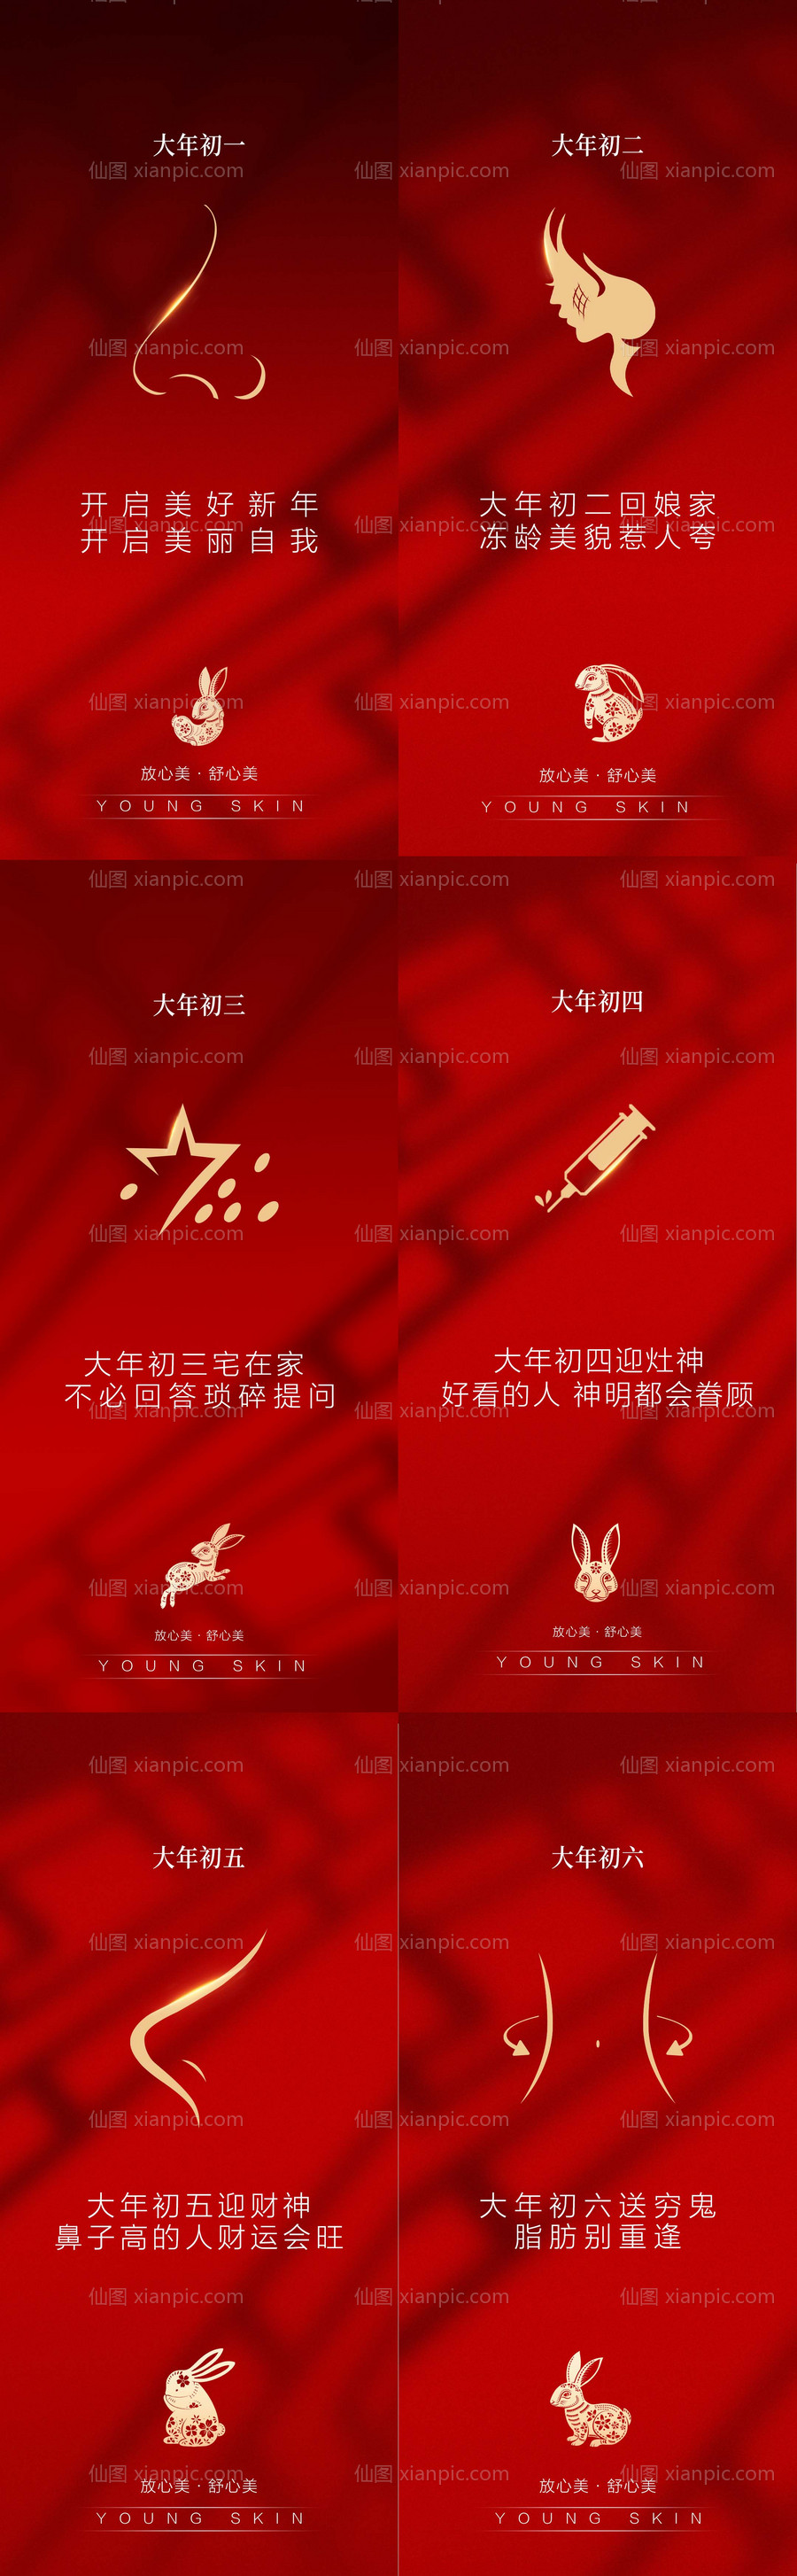 素材乐-春节医美系列海报